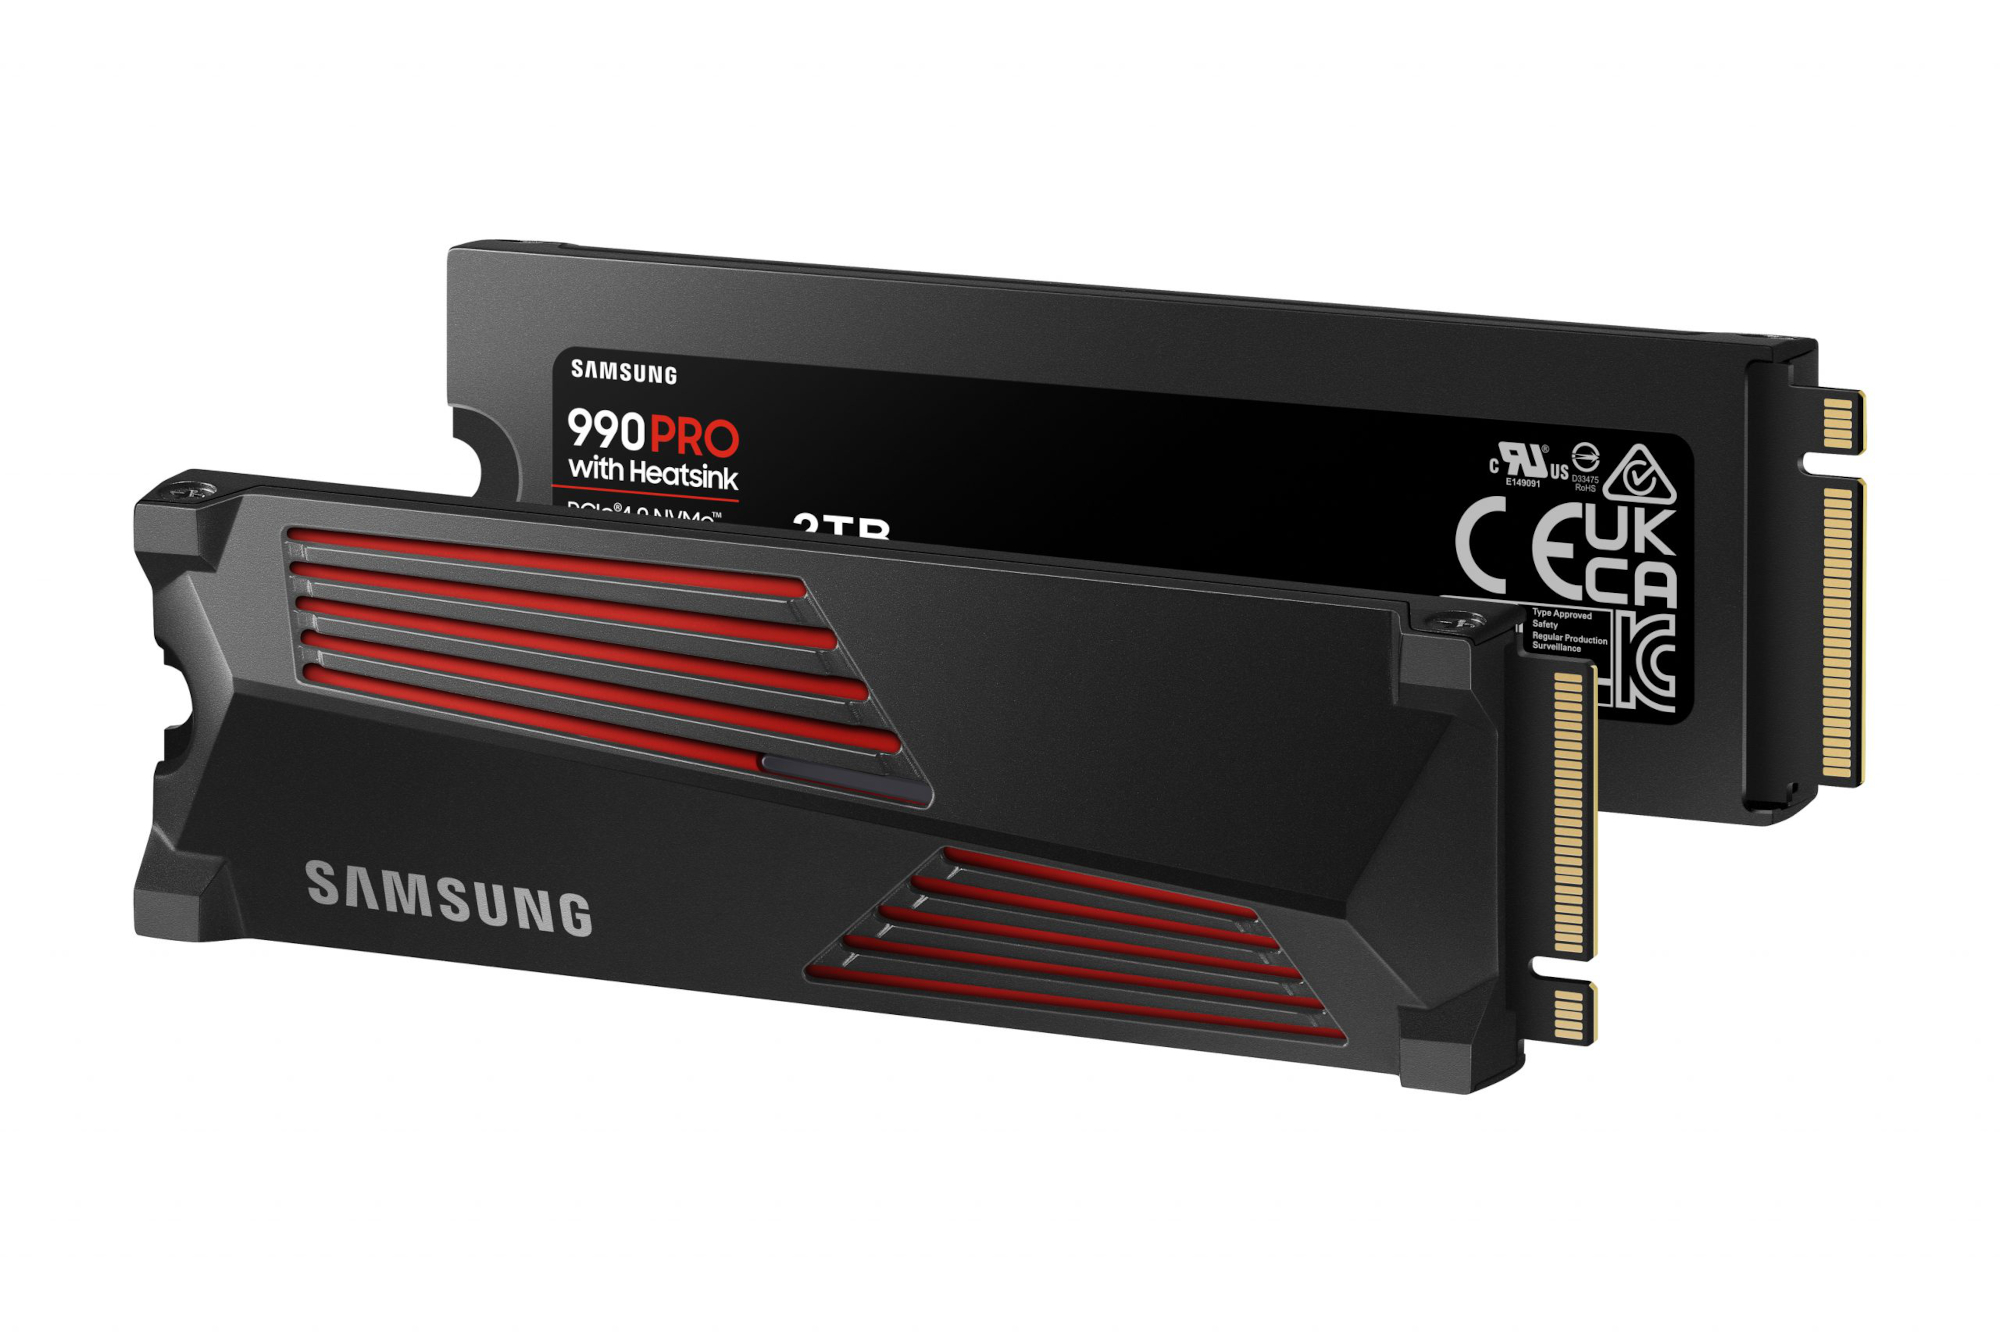 Samsung 990 Pro NVMe SSD - Meilleures performances PCIe 4.0